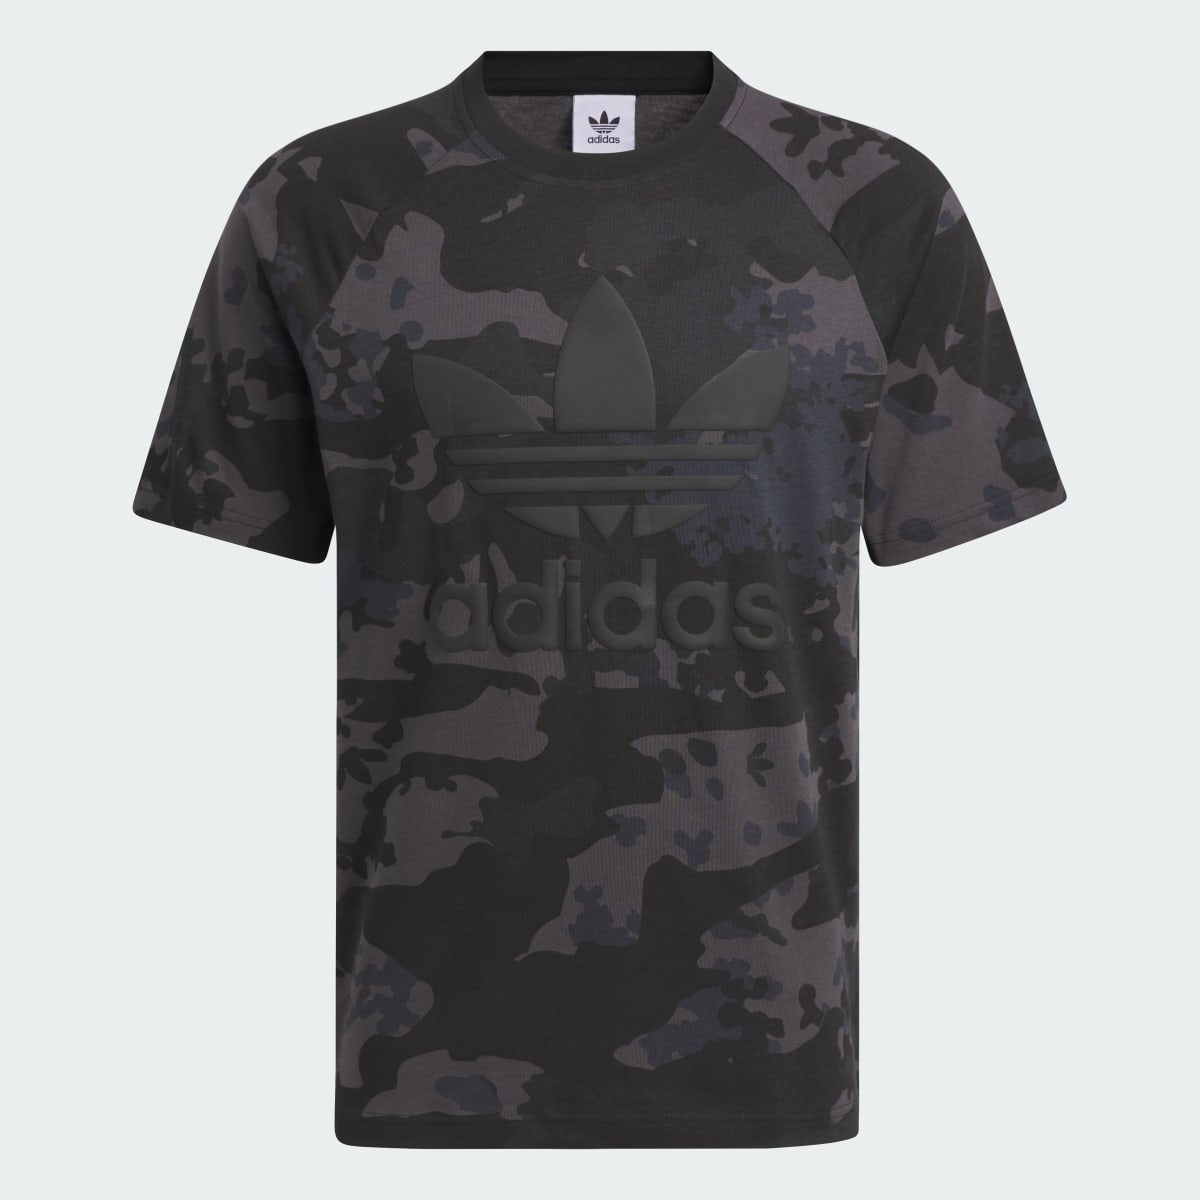 Adidas T-shirt Camo Trèfle. 5